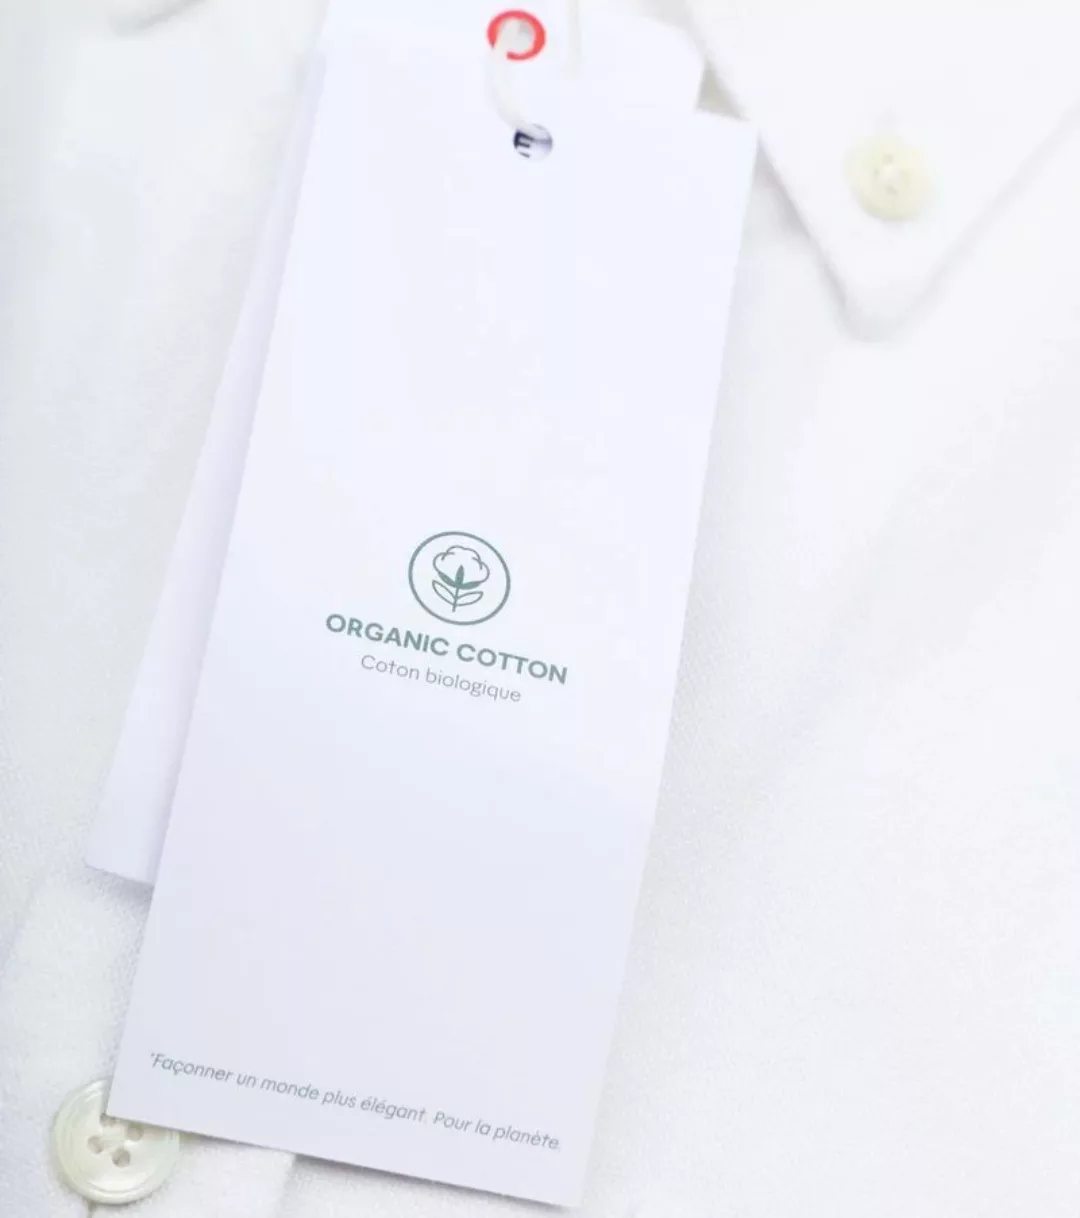 Lacoste Oxford Hemd Weiß - Größe 39 günstig online kaufen